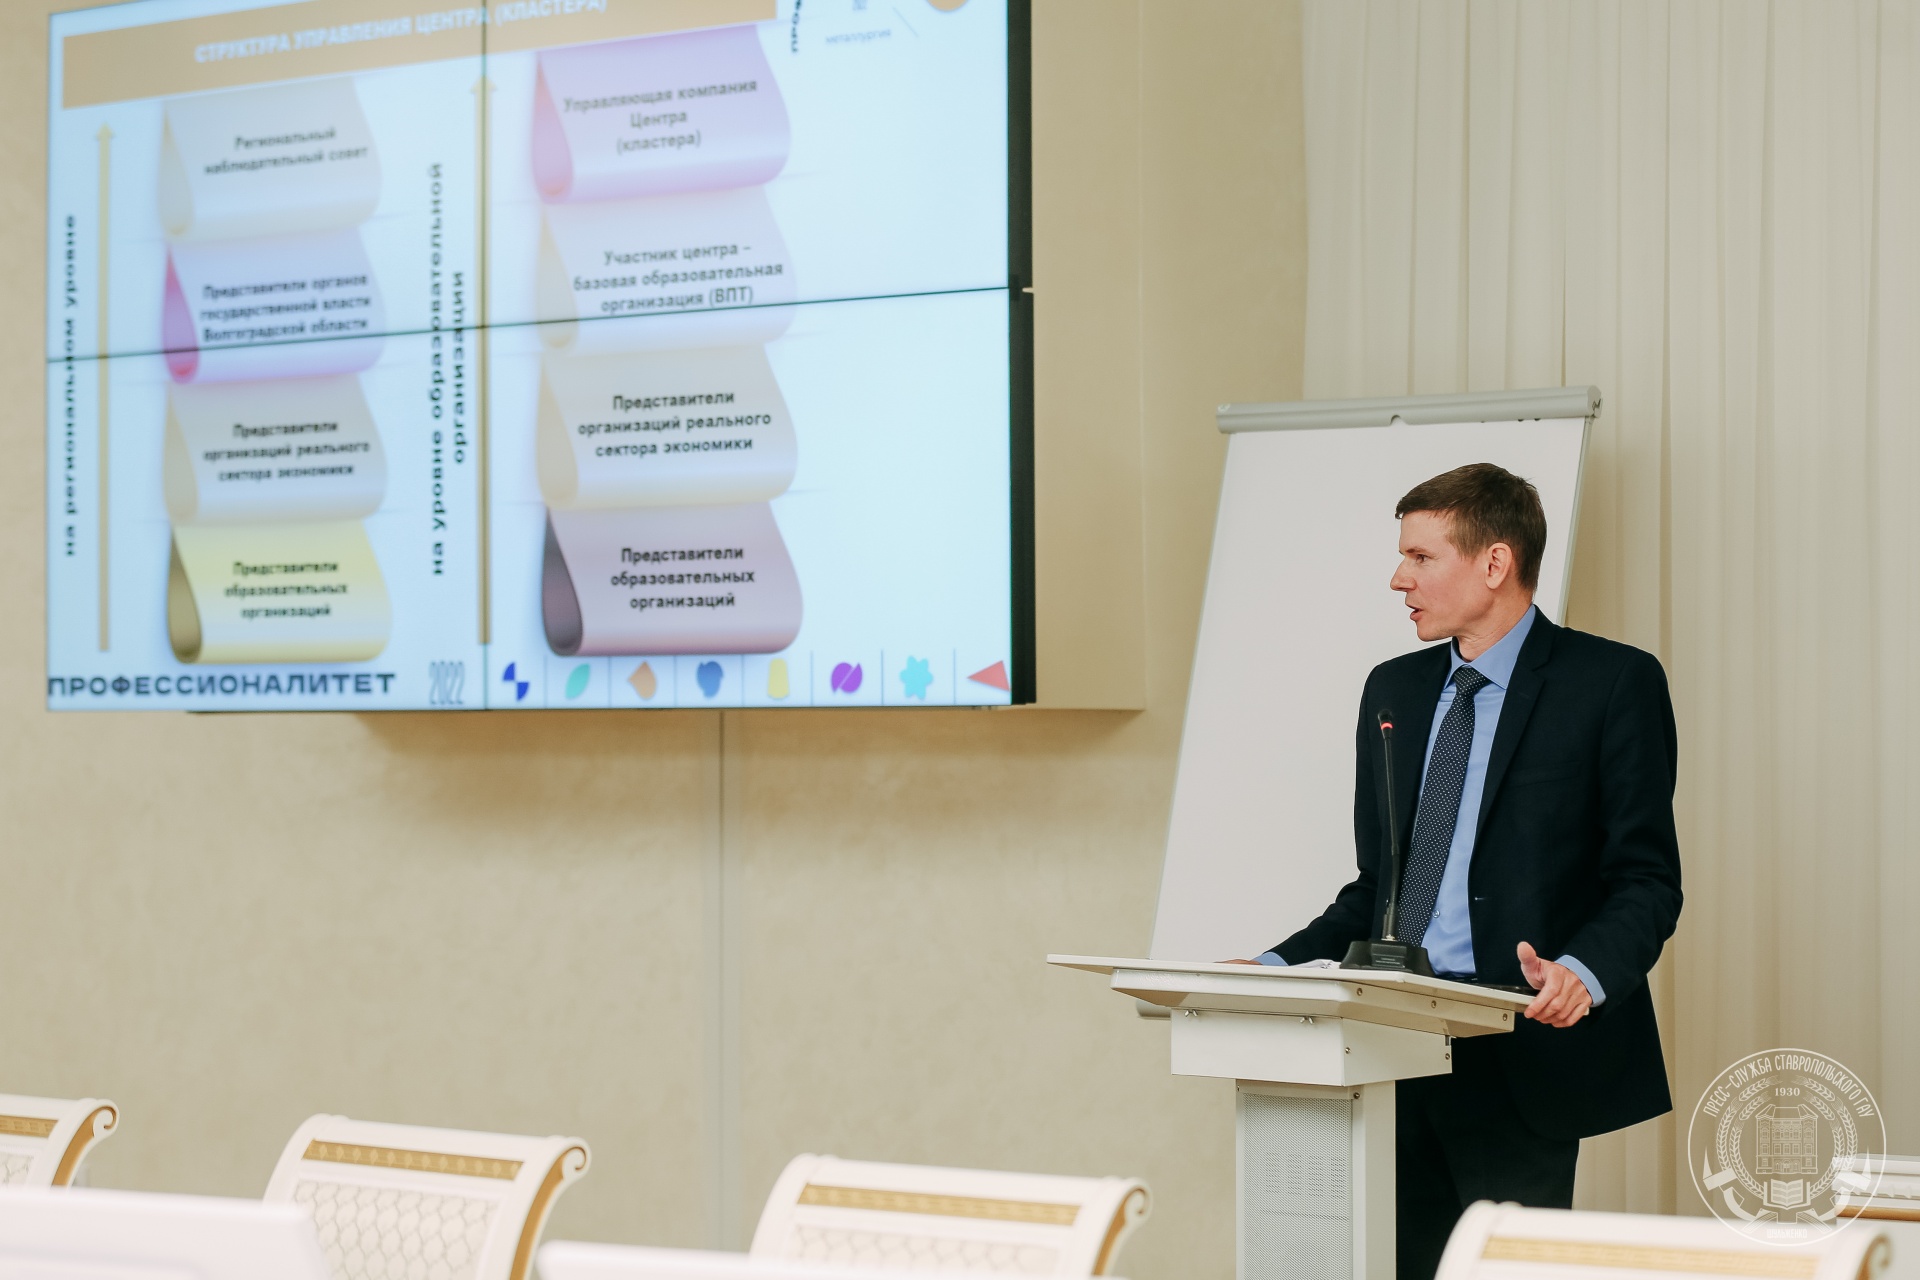 Специалисты Волгоградской области представили программу развития образовательно-производственных центров